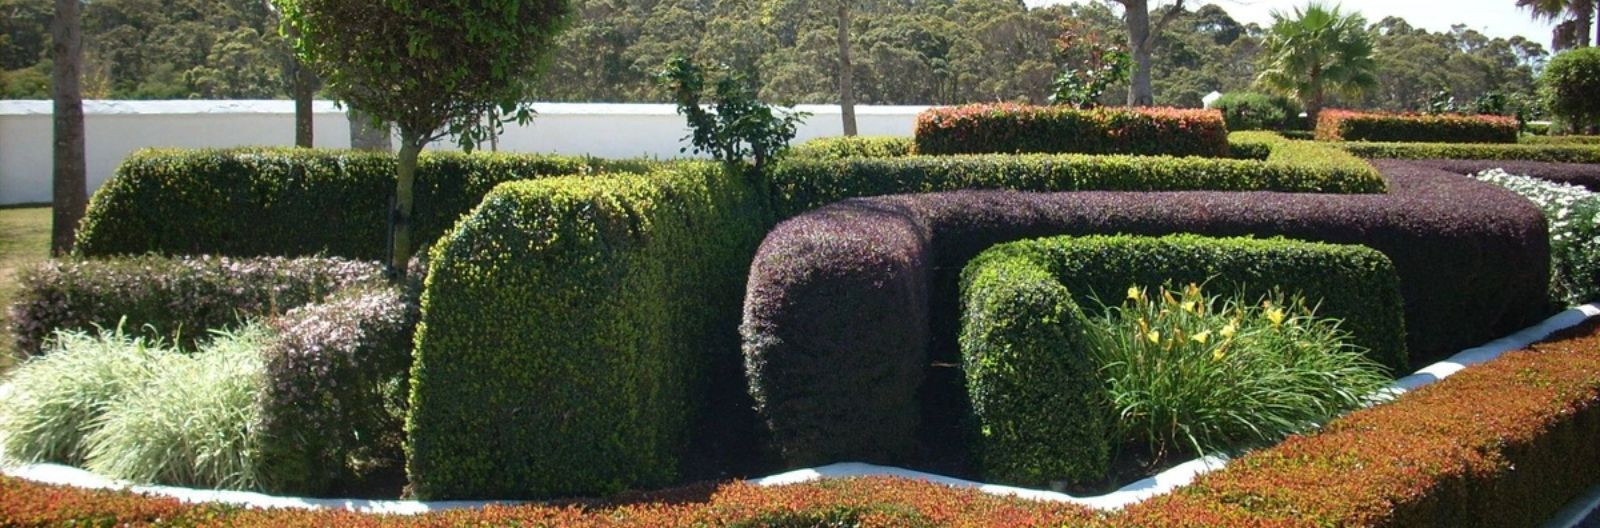 Hekipügamise peen kunst on aednikutöö, mis hõlmab heki kujundamist ja pügamist teatud kujunditeks ja stiilideks. See võib hõlmata erinevaid tehnikaid, nagu püga